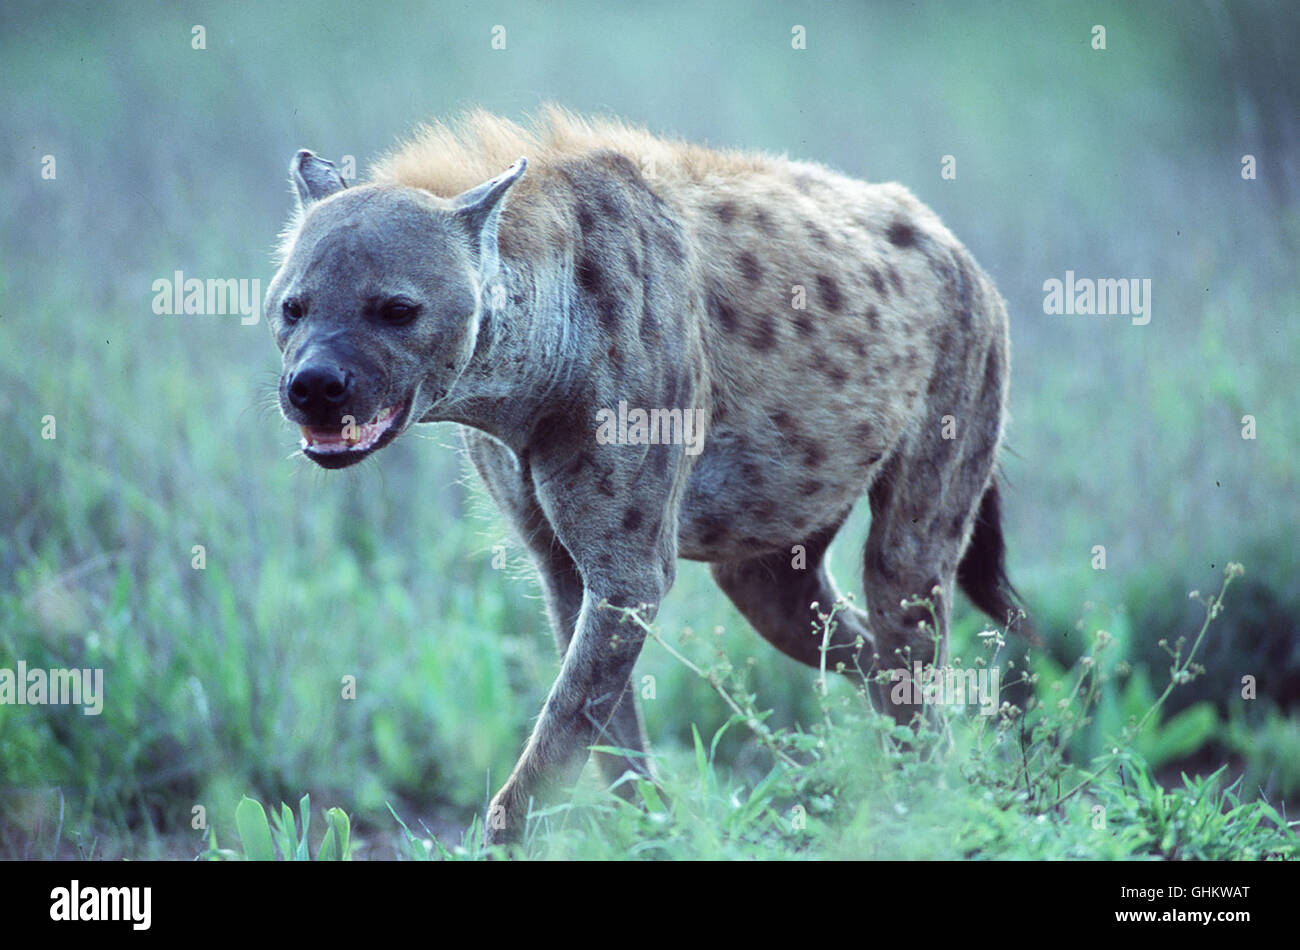 Die Dokumentation zeigt, daß HYÄNEN (Foto), allgemein als Aasfresser bekannt, viel besser sind als ihr Ruf. Forscher haben herausgefunden, daß Hyänen zu den am meisten mißverstandenen Tieren überhaupt gehören und in Wahrheit emsige Jäger sind. aka. The Scavengers Tale Stock Photo